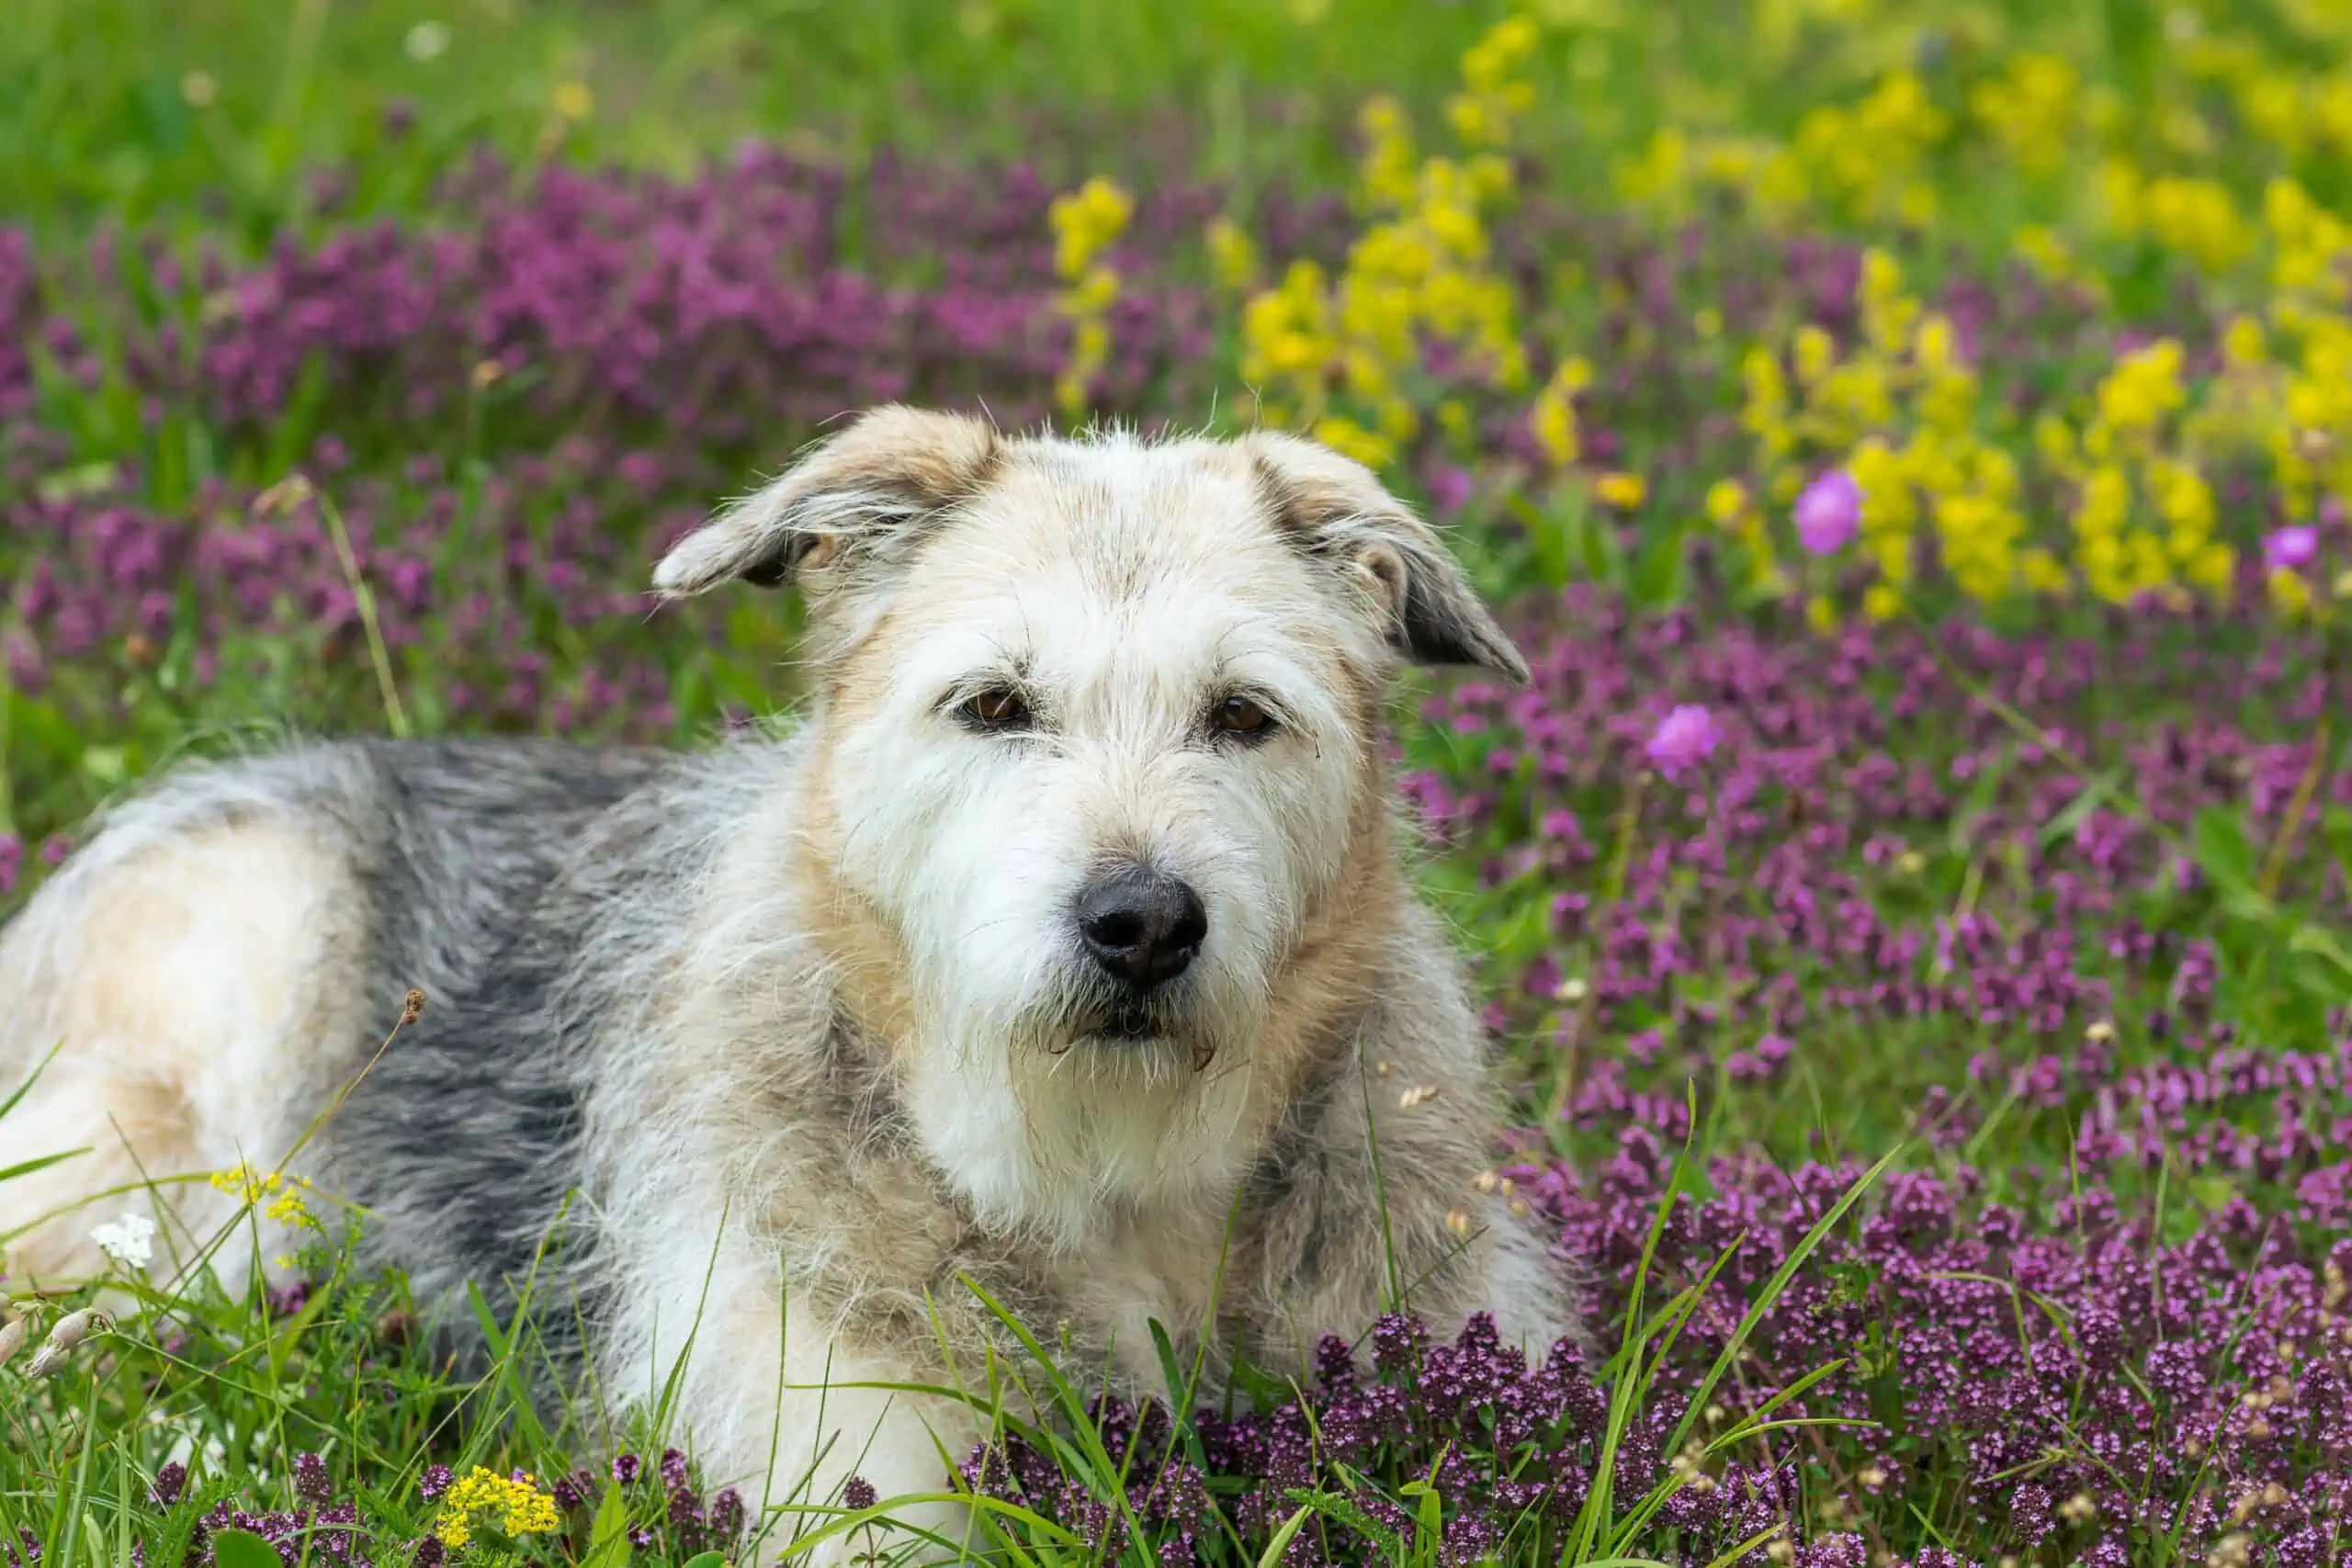 Choosing between glen of imaal terrier or border terrier 